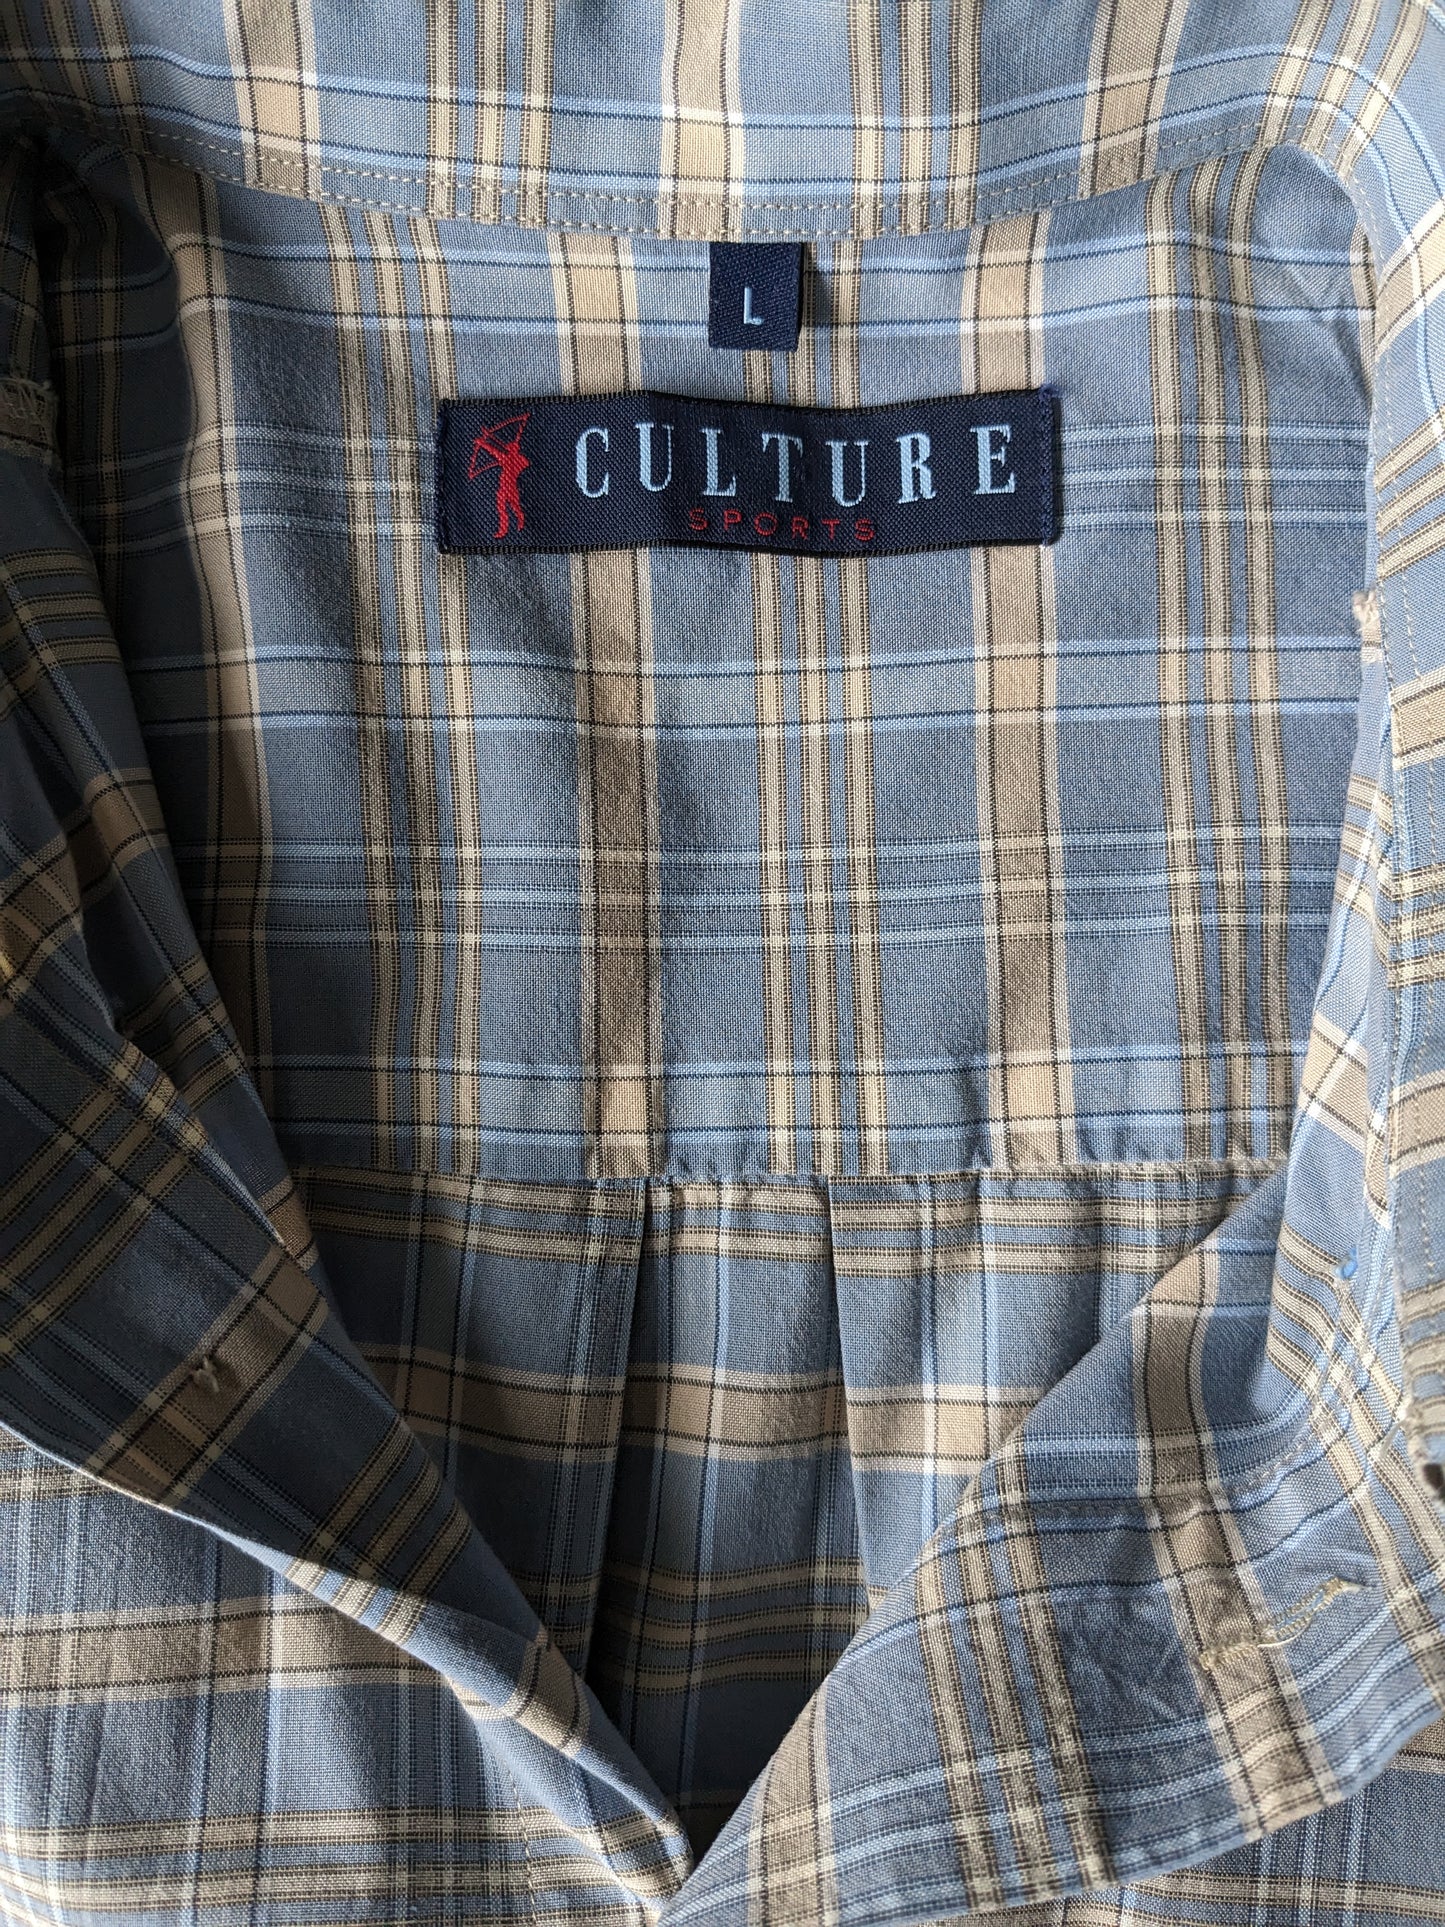 Vintage Culture Sports overhemd korte mouw. Blauw Beige geruit. Maat L / XL.